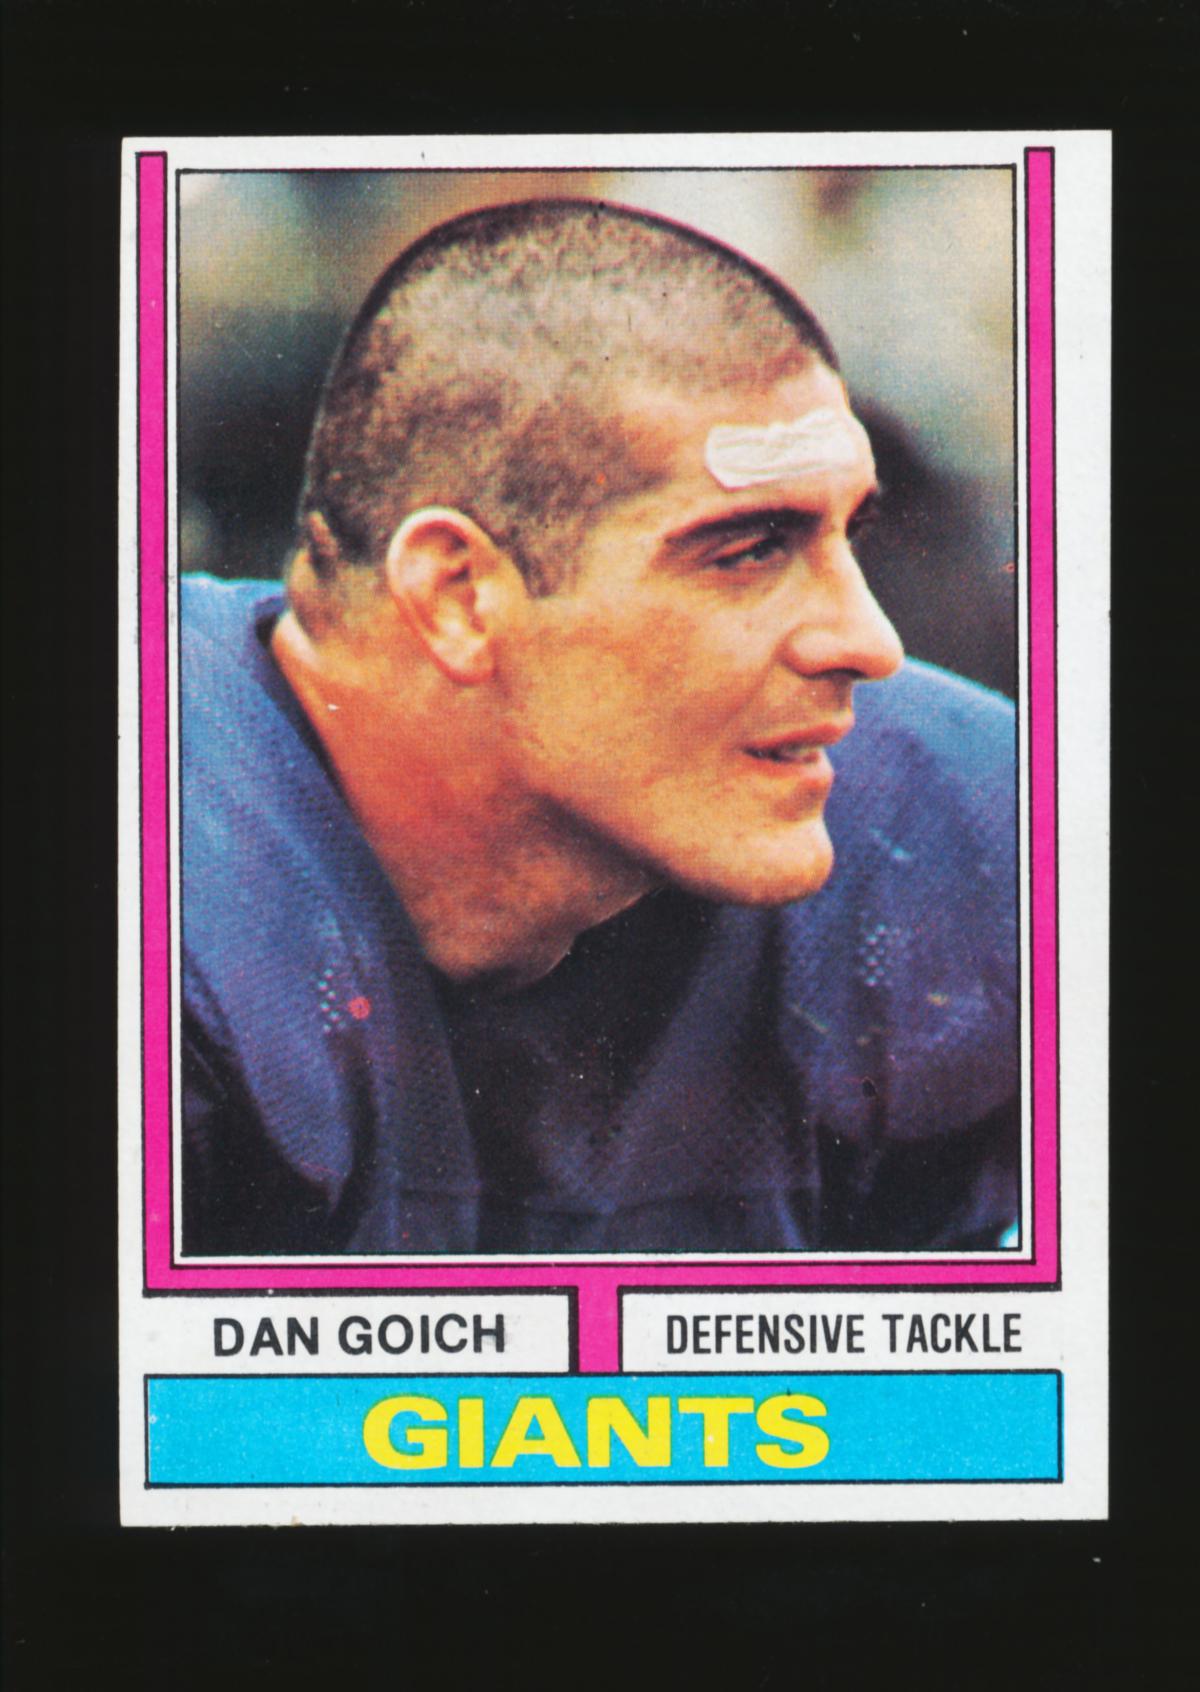 1974 Topps Football Card #102 Dan Goich New York Giants. After Football Dan